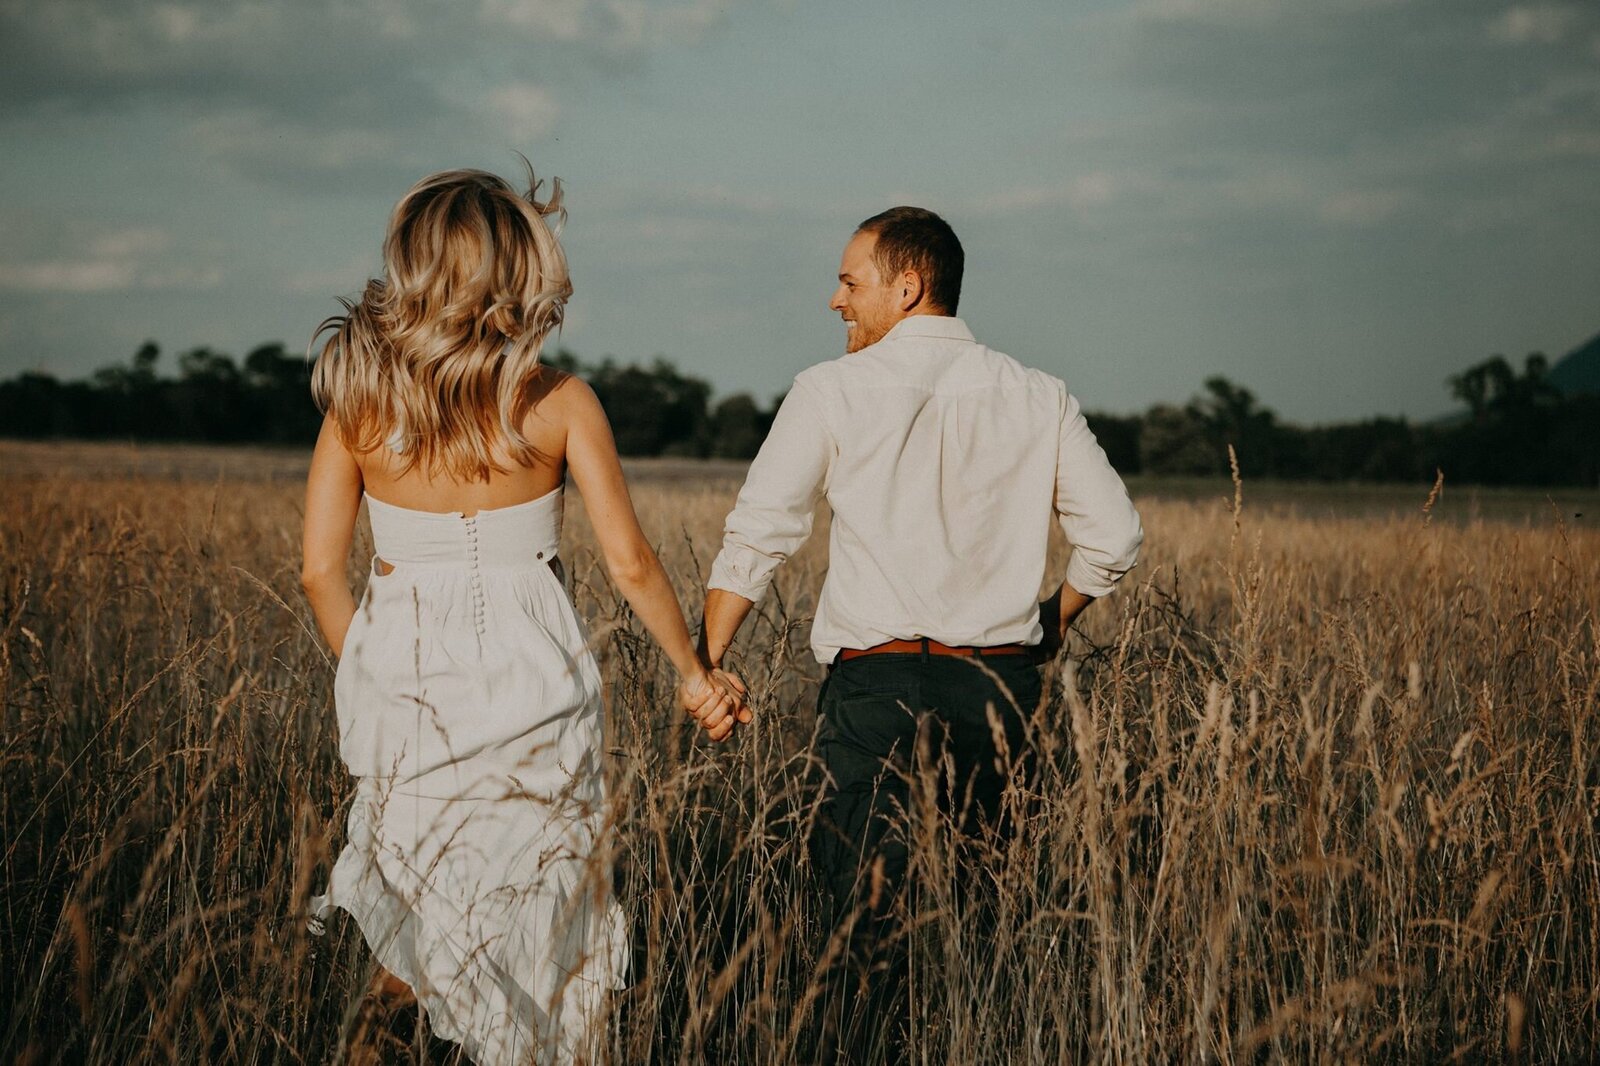 A man and a blond woman run through a field of long grass at sunset